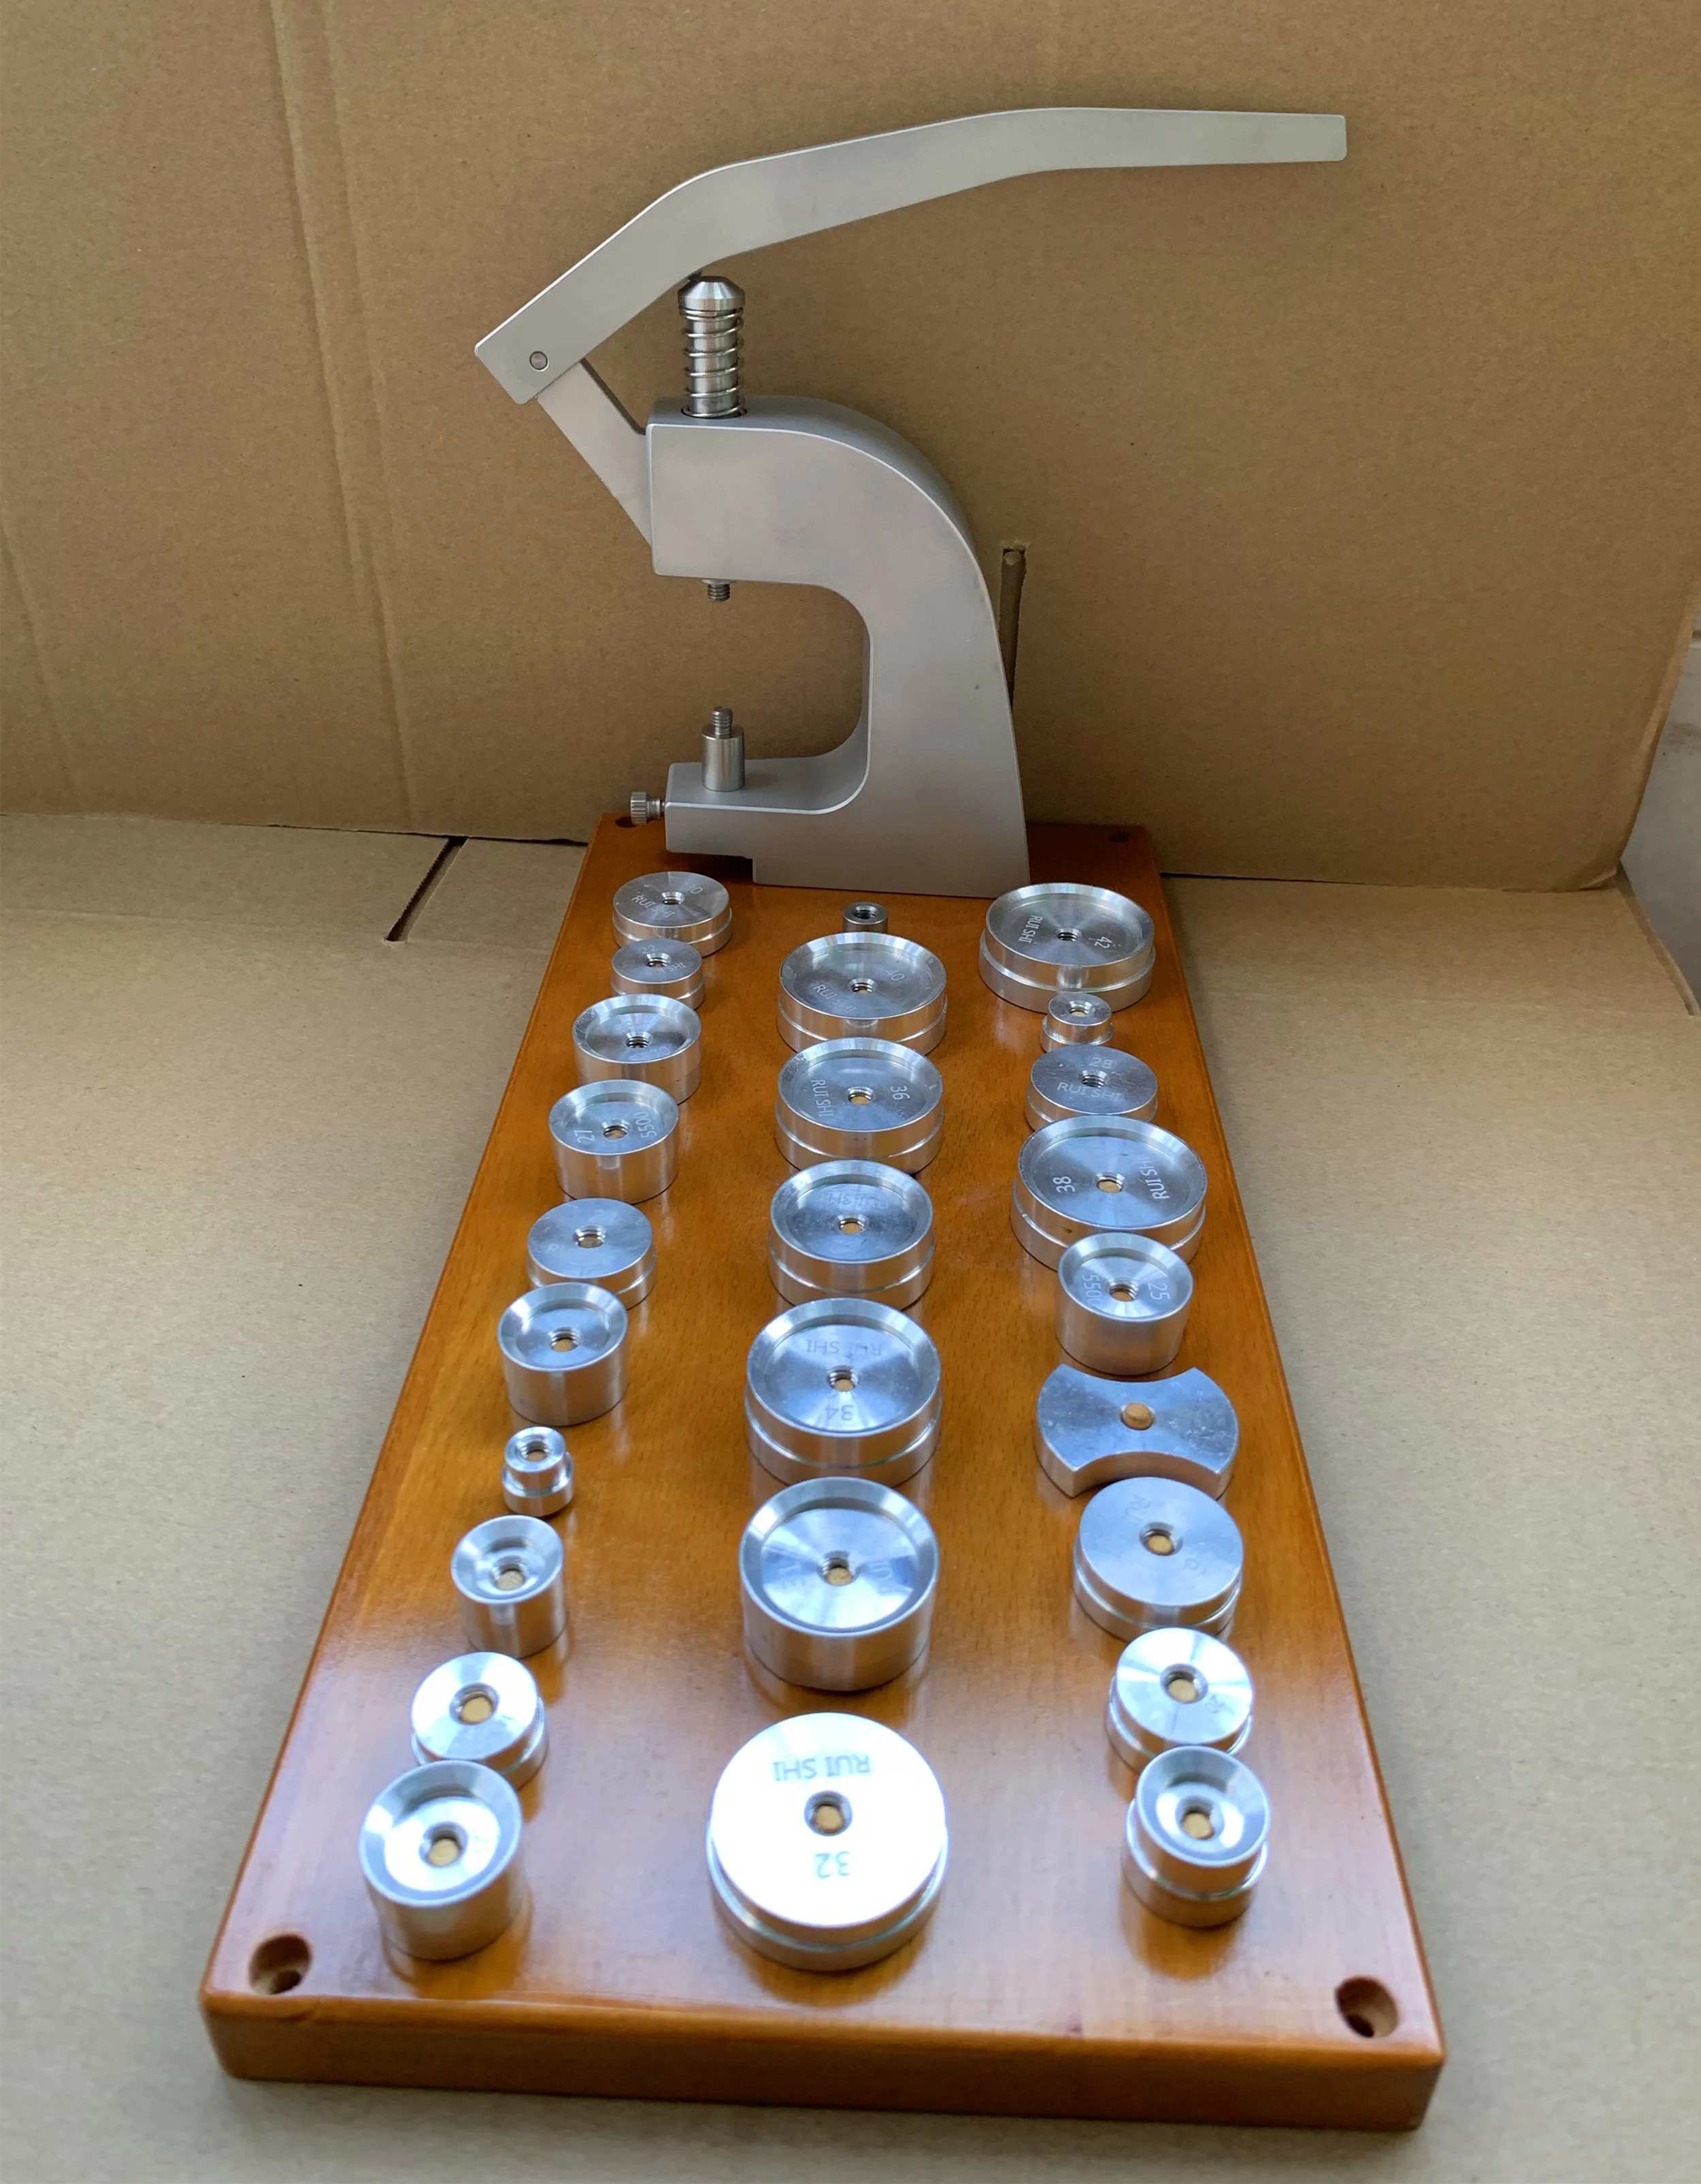 Инструмент для ремонта часов No 5500 A-25 шт. набор инструментов для установки кристаллов часов и чехол для задней панели